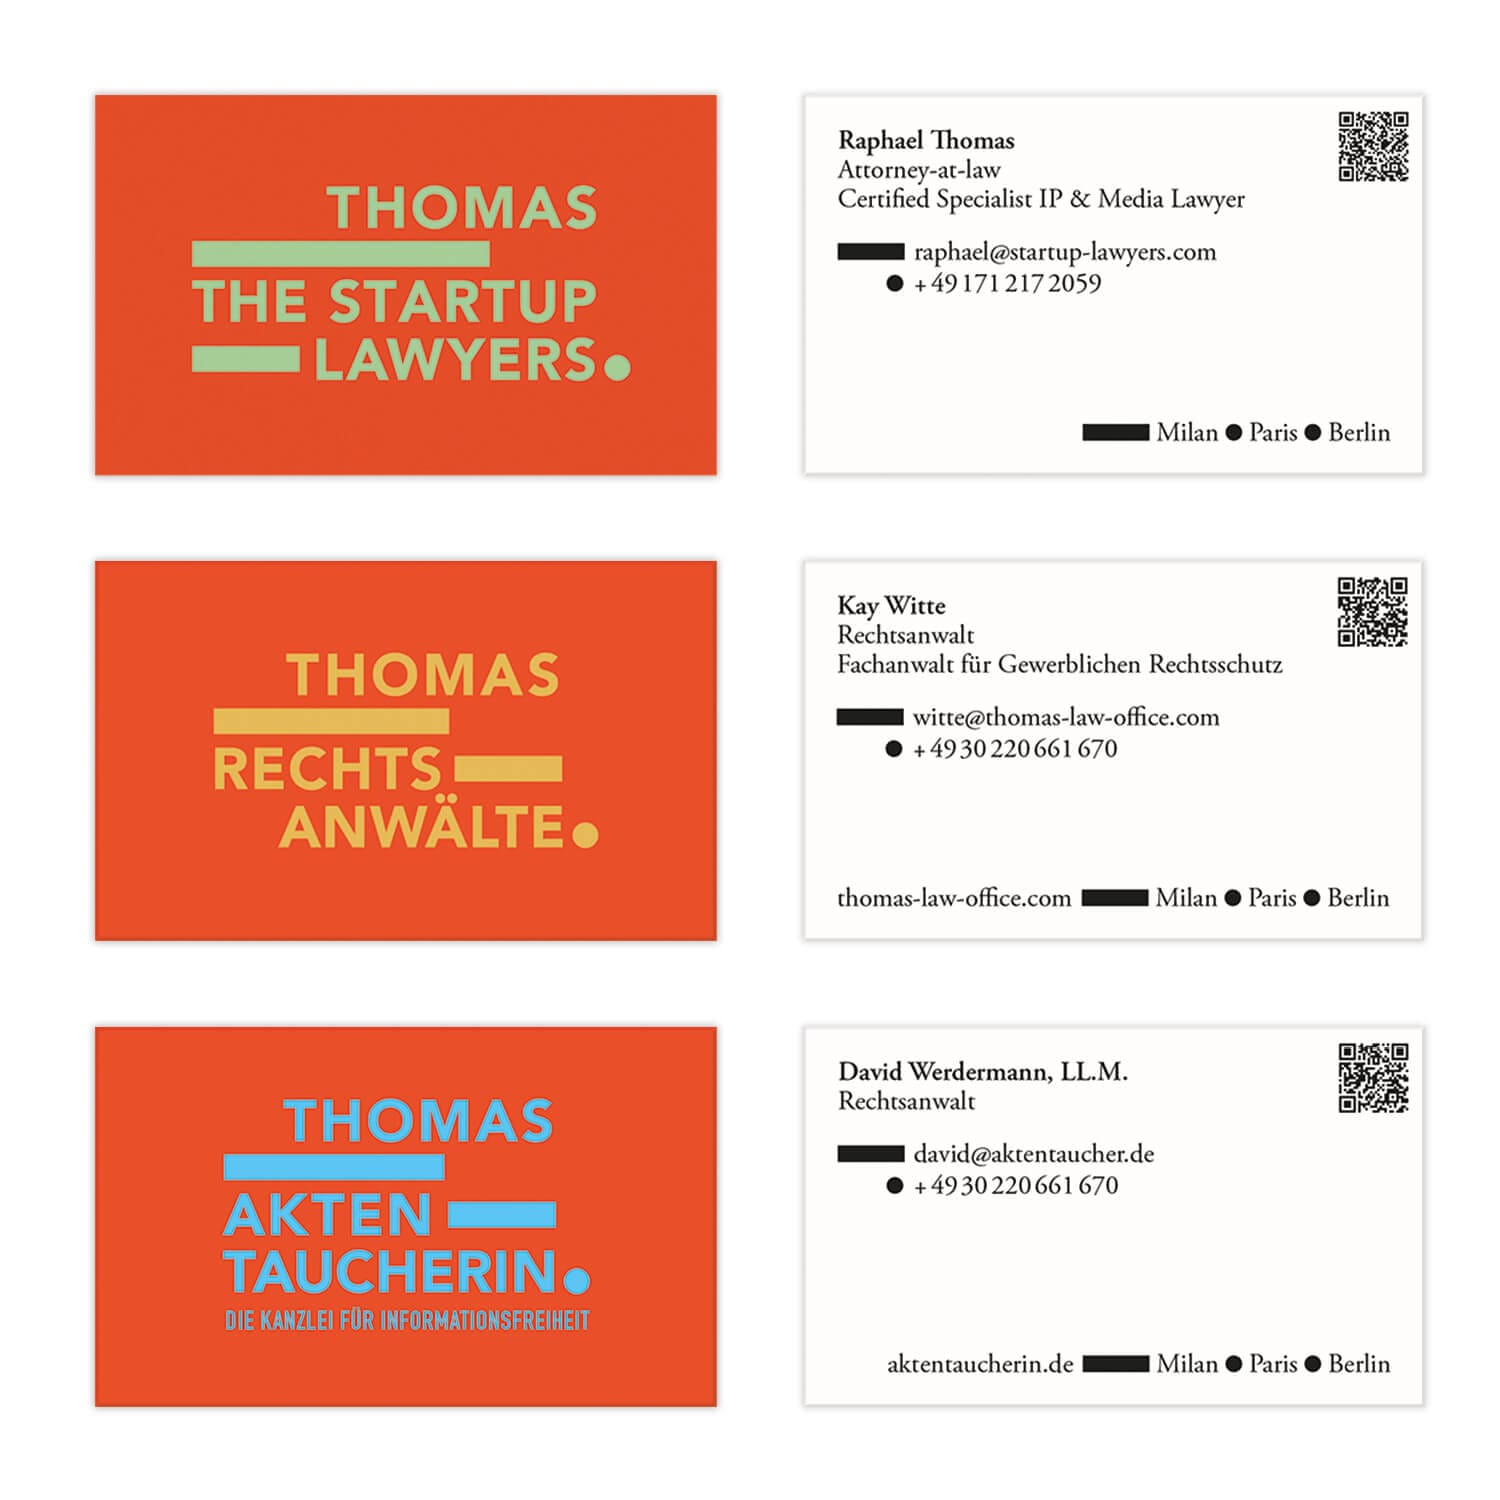 carte de visites bauhaus pour Thomas the startup lawyers, signé Ich&Kar